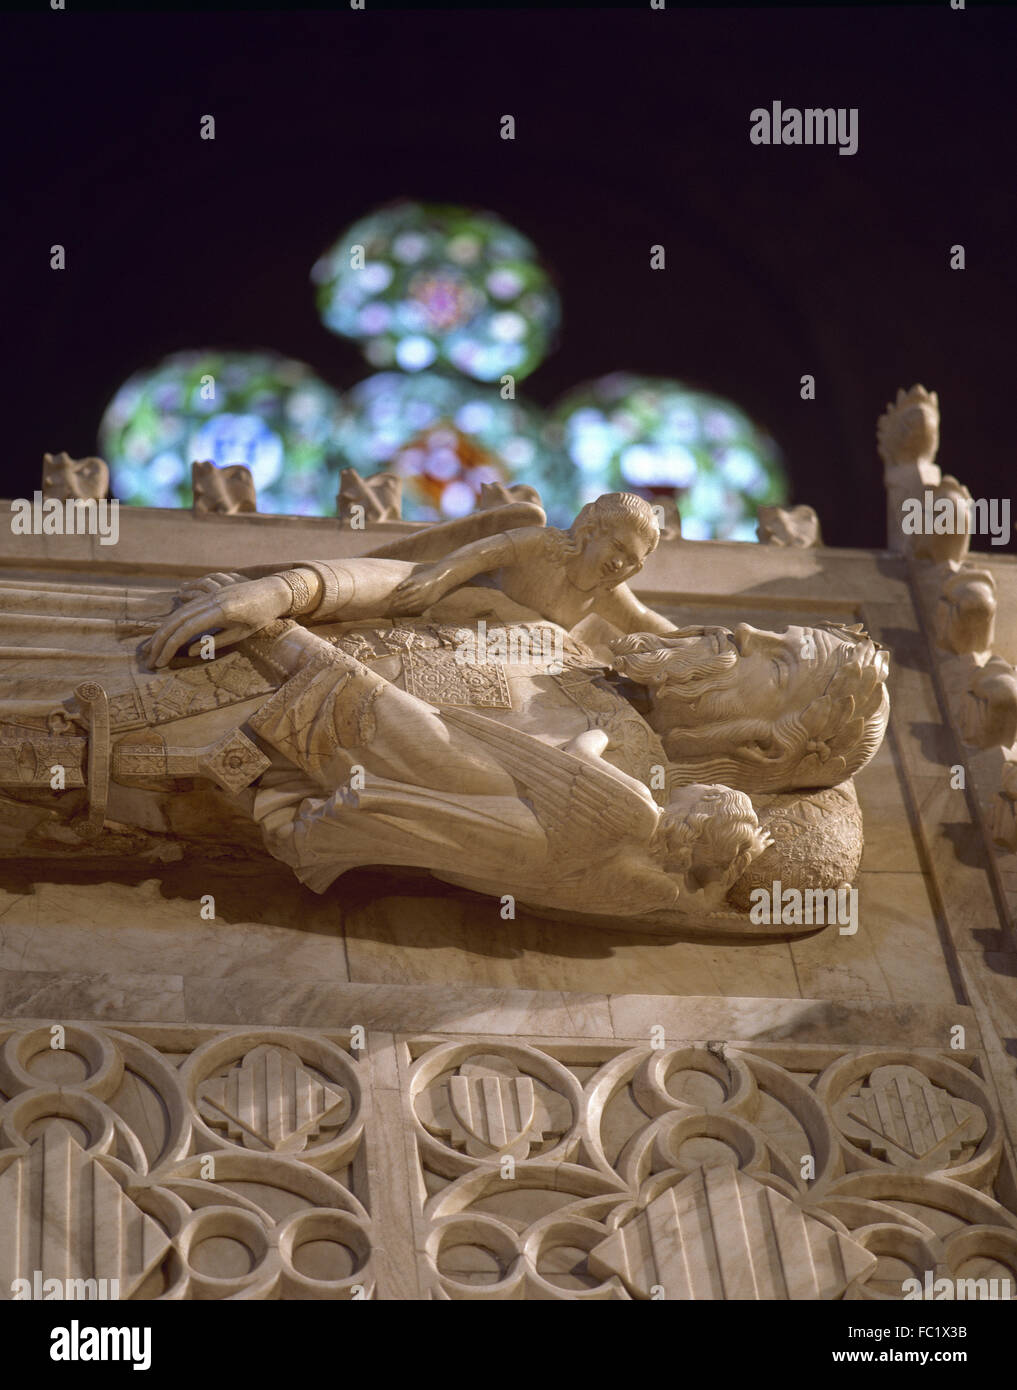 Alfonso II. von Aragon genannt der keusche (1154-1196). König von Königreich von Aragon. Grab von Alfonso II. Königliches Pantheon. Von Frederic Mares (1893-1991) restauriert. Kloster Poblet. Vimbodi. Katalonien. Spanien. Stockfoto